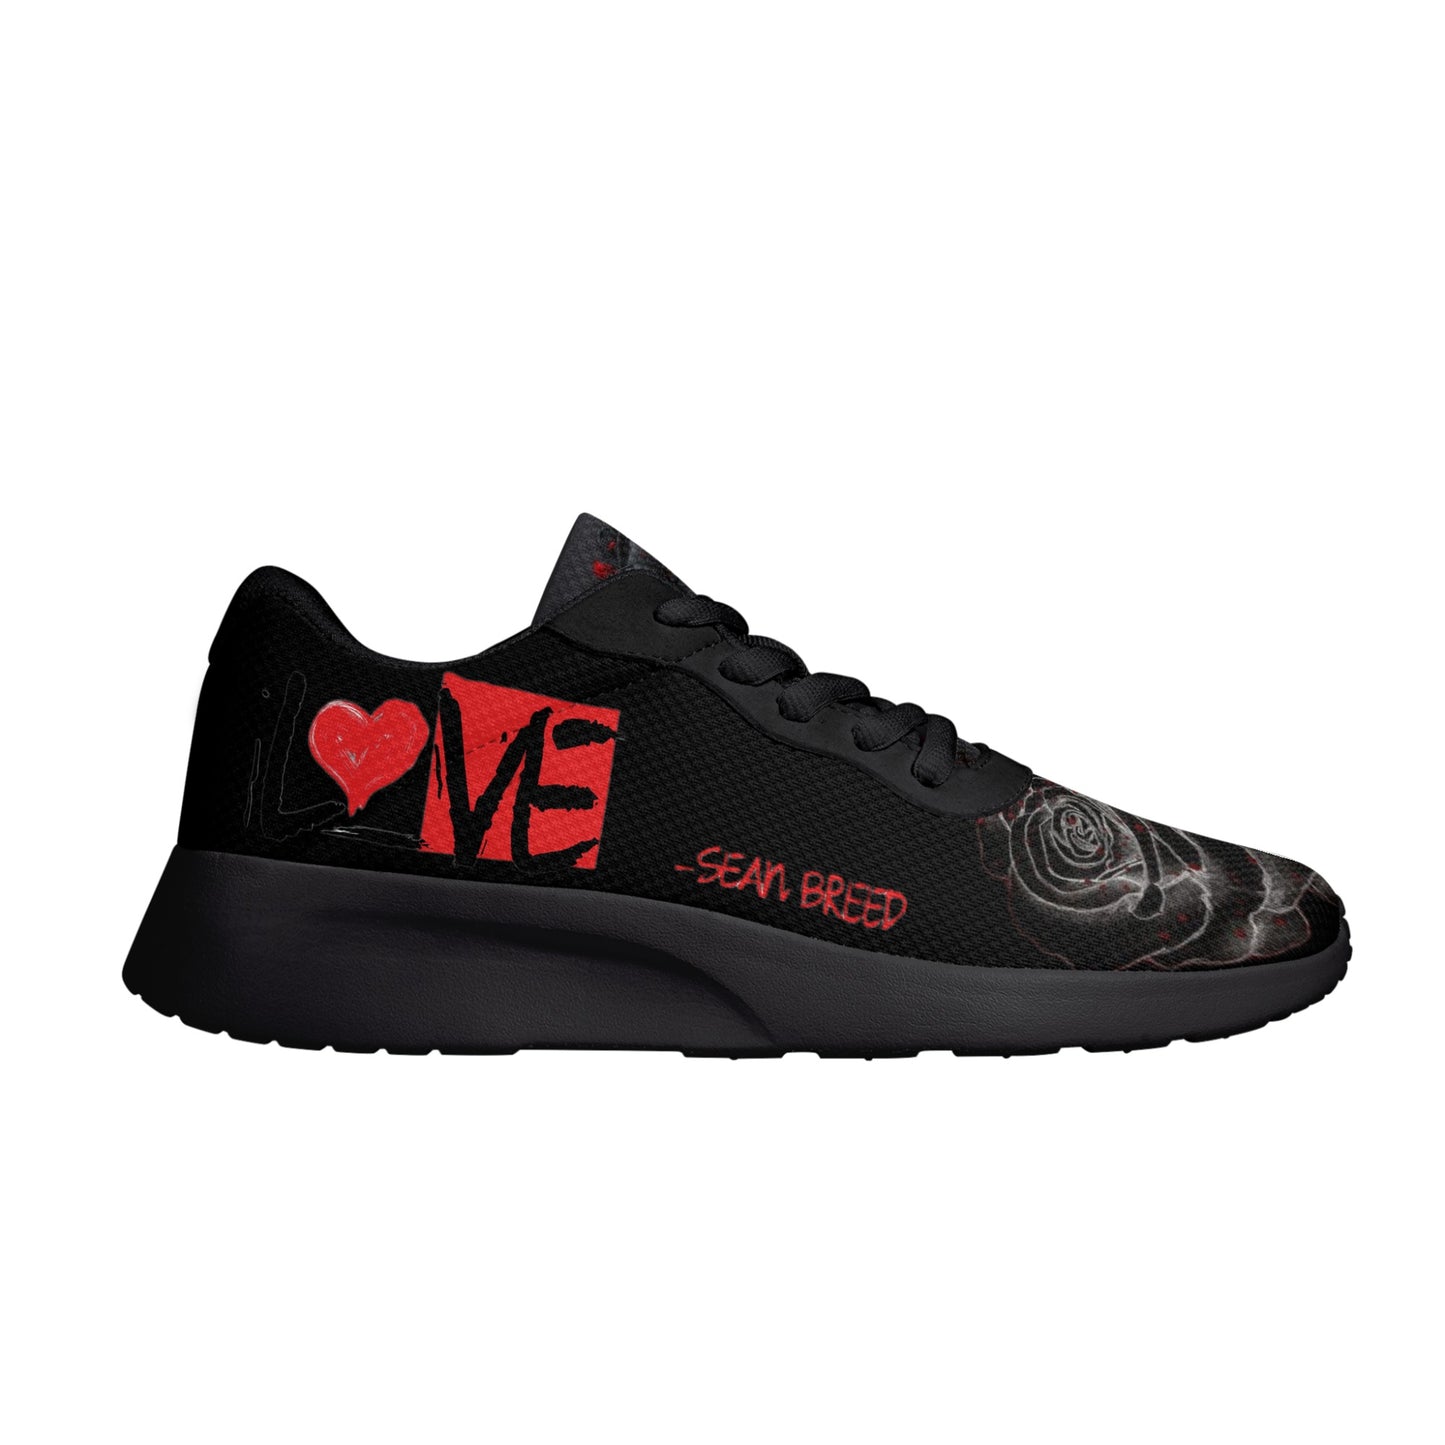 Sean Breed Love Mens Air Mesh Running Shoes